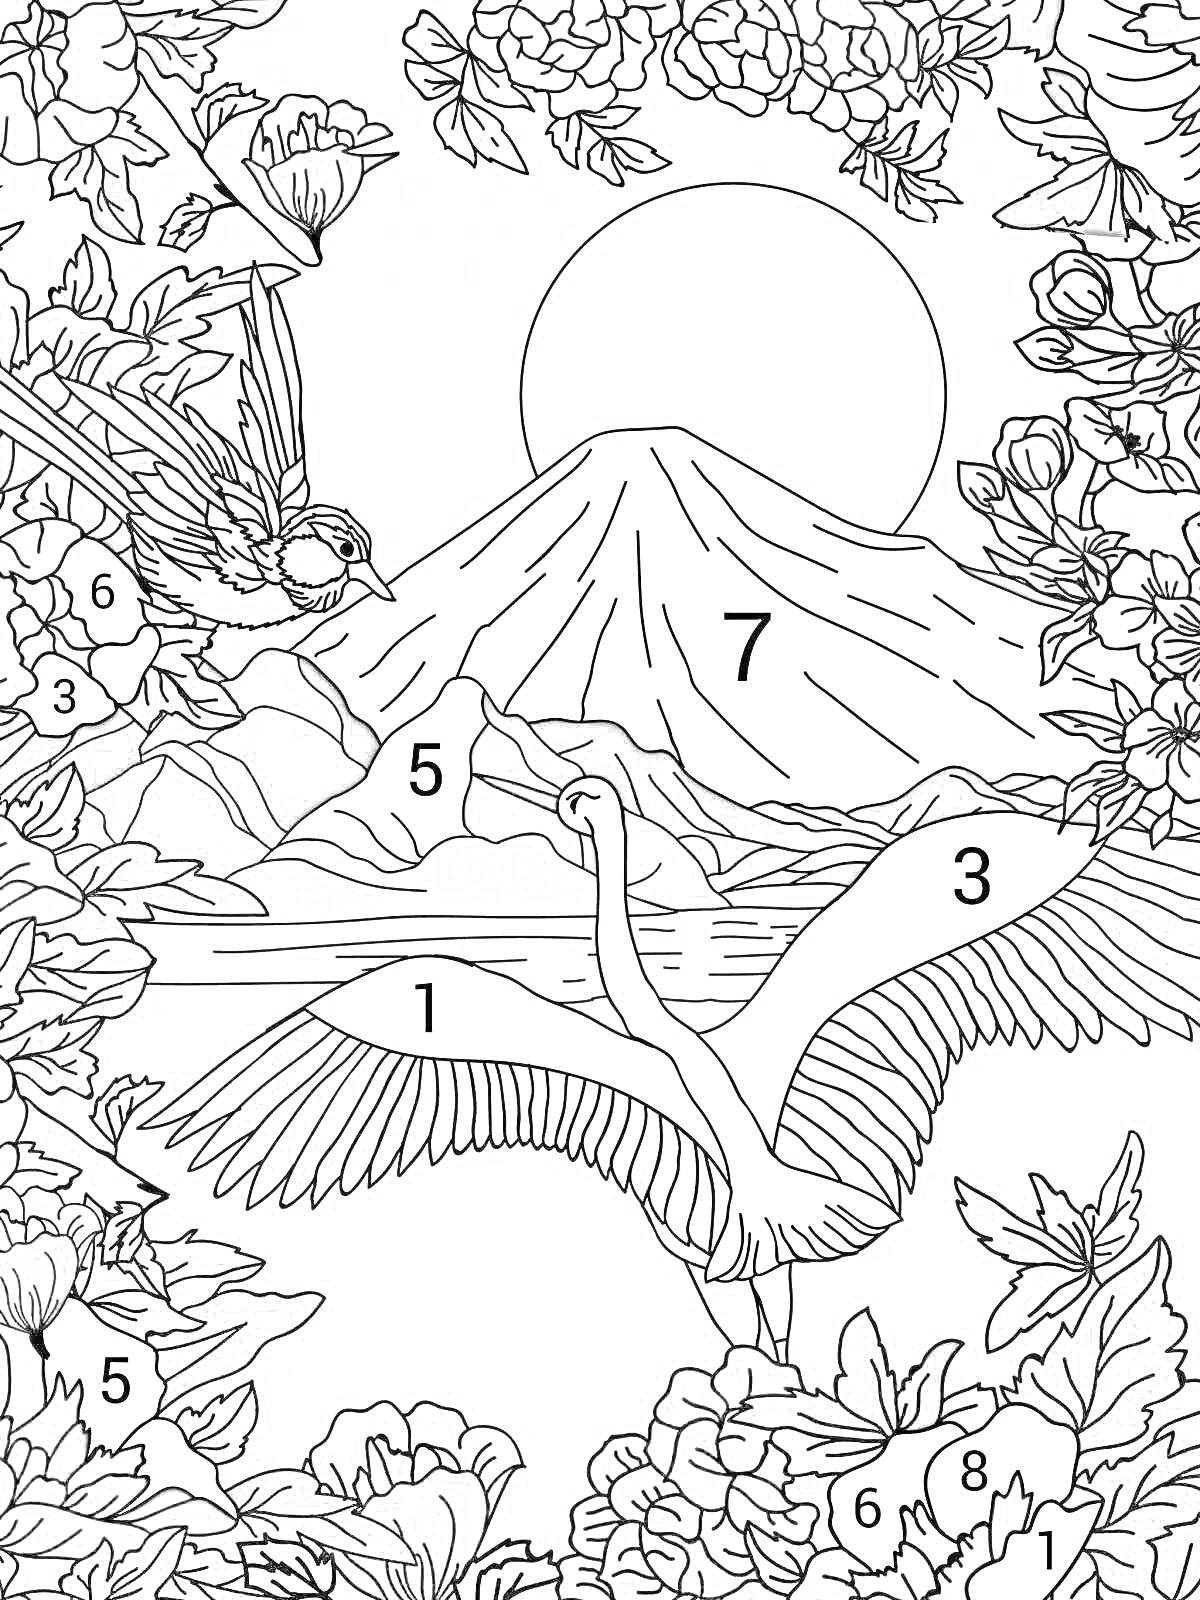 Раскраска Лебедь перед вулканом, окружающие цветы и птица на ветке